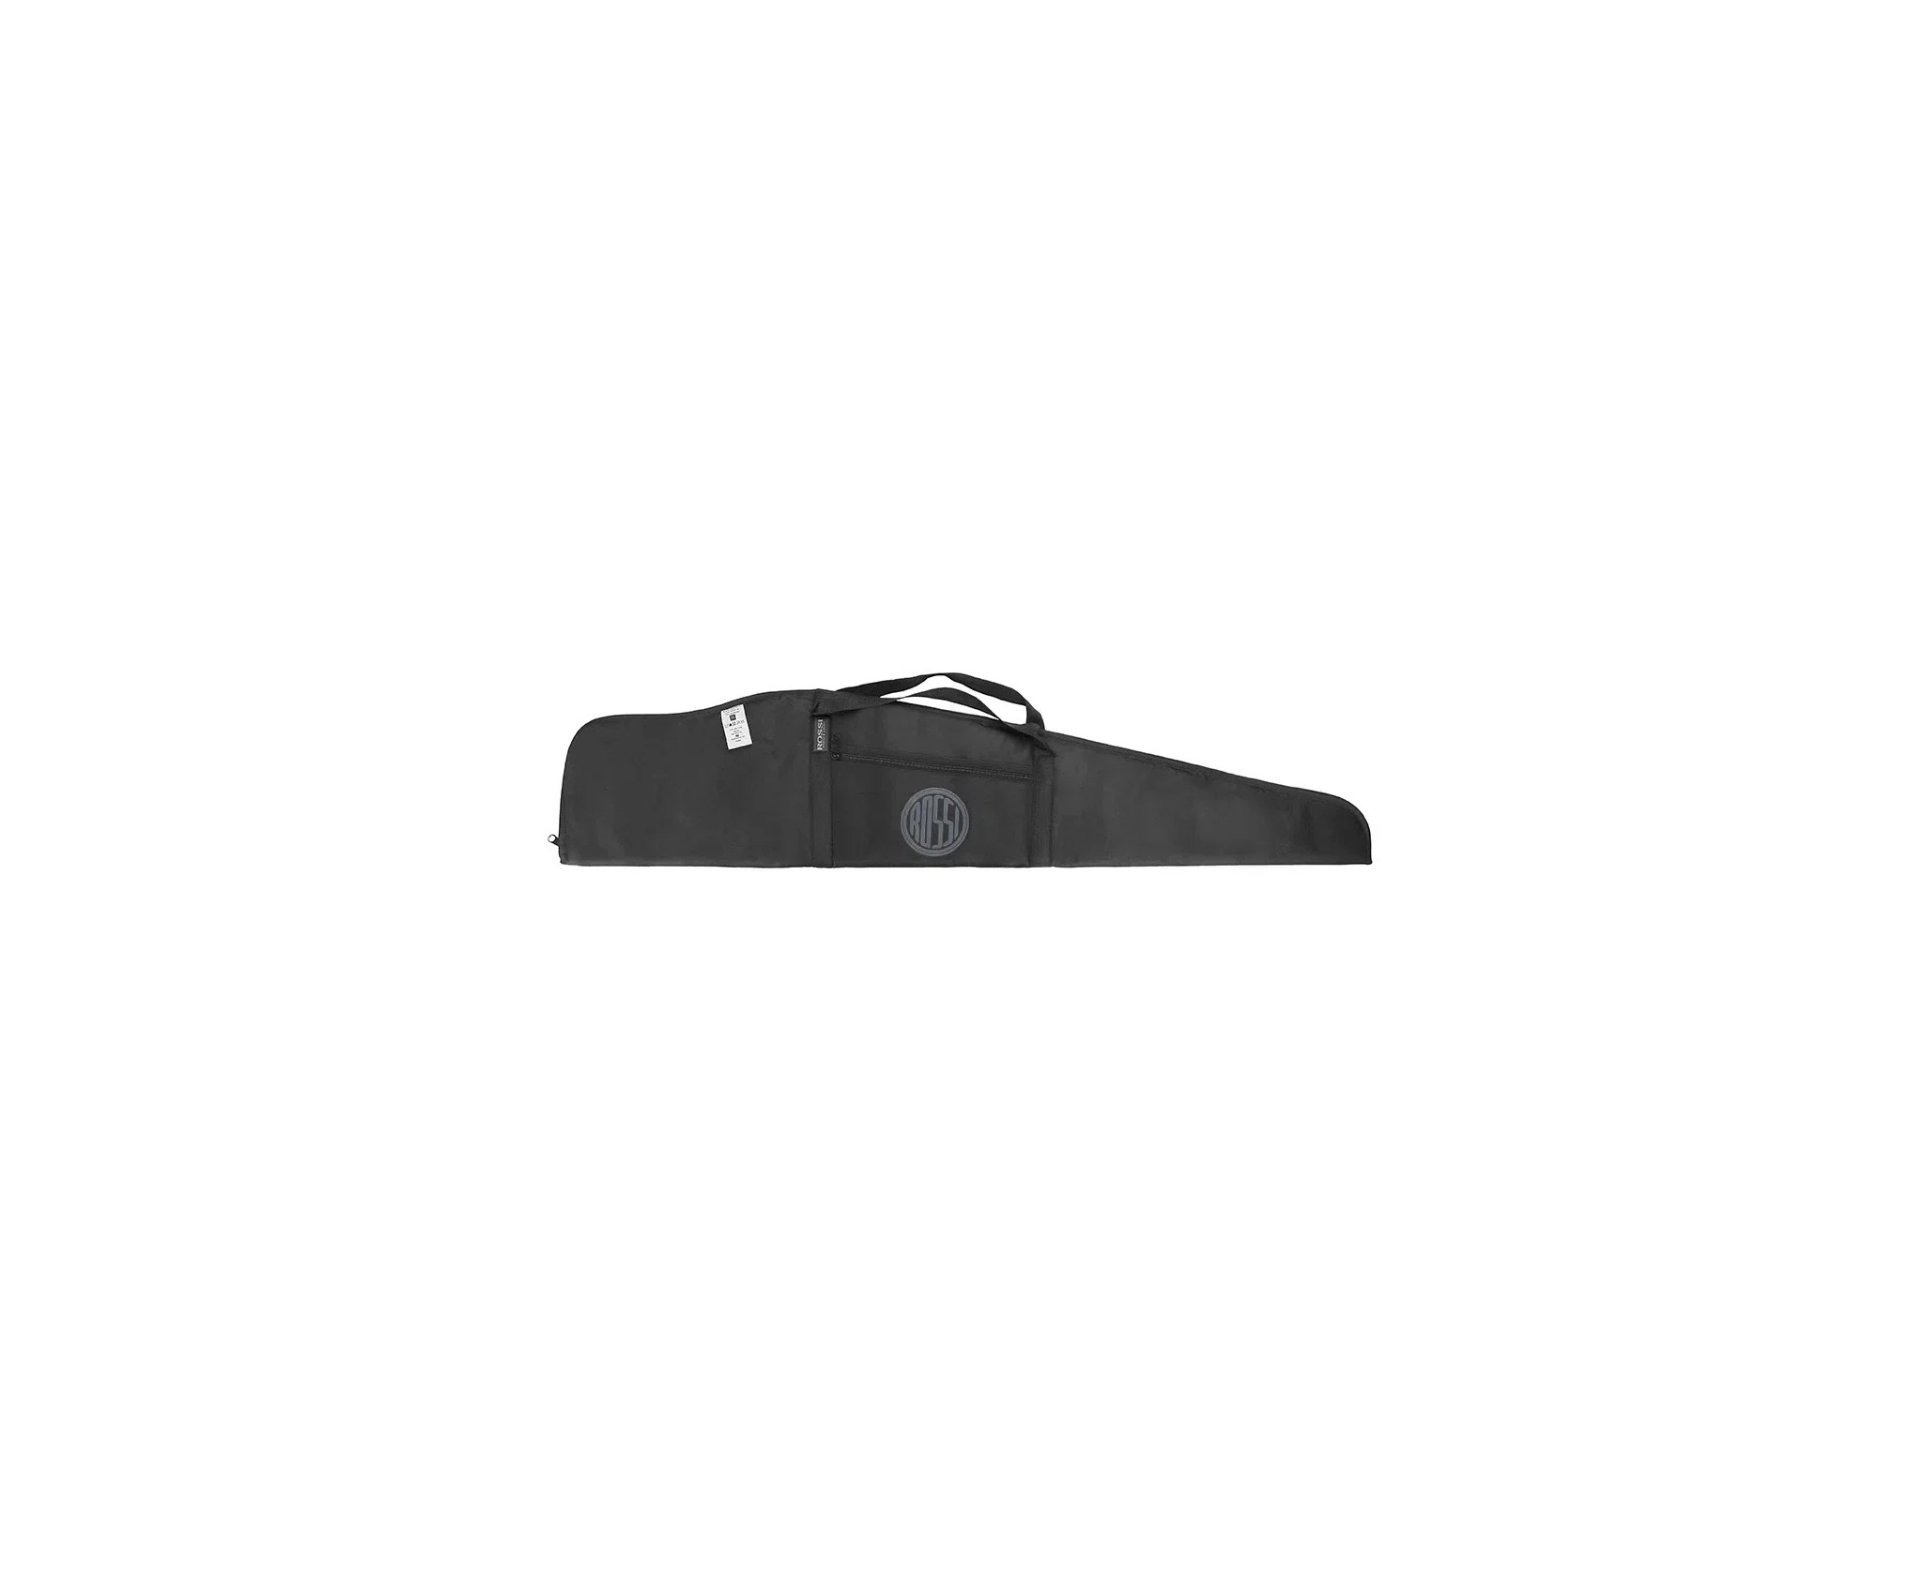 Carabina de Pressão PCP Hatsan Flash 101 VR com Válvula Reguladora 5,5 + Capa Rossi